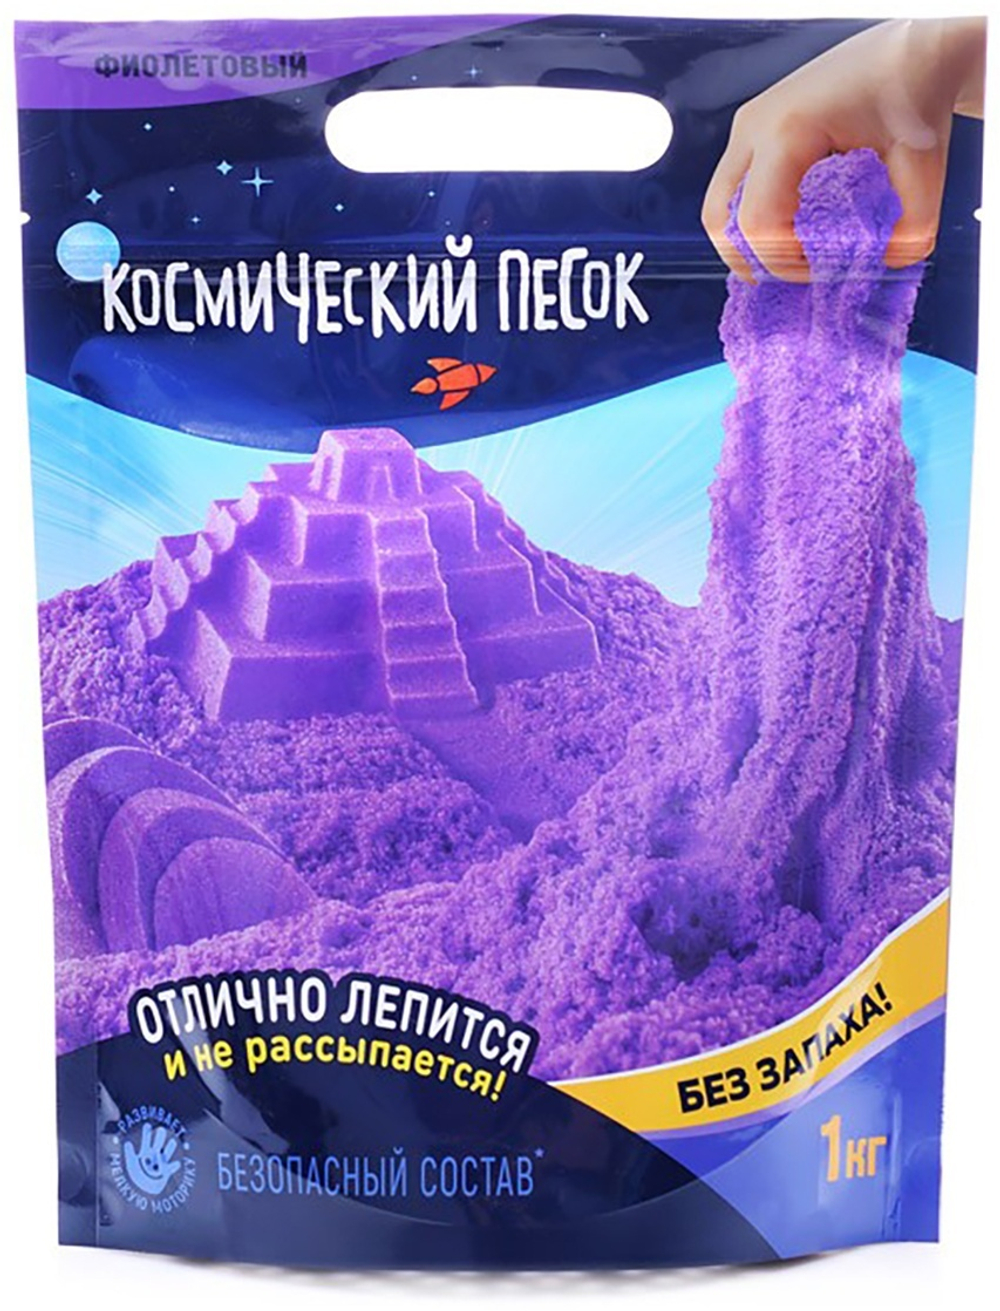 Космический песок 1 кг фиолетовый